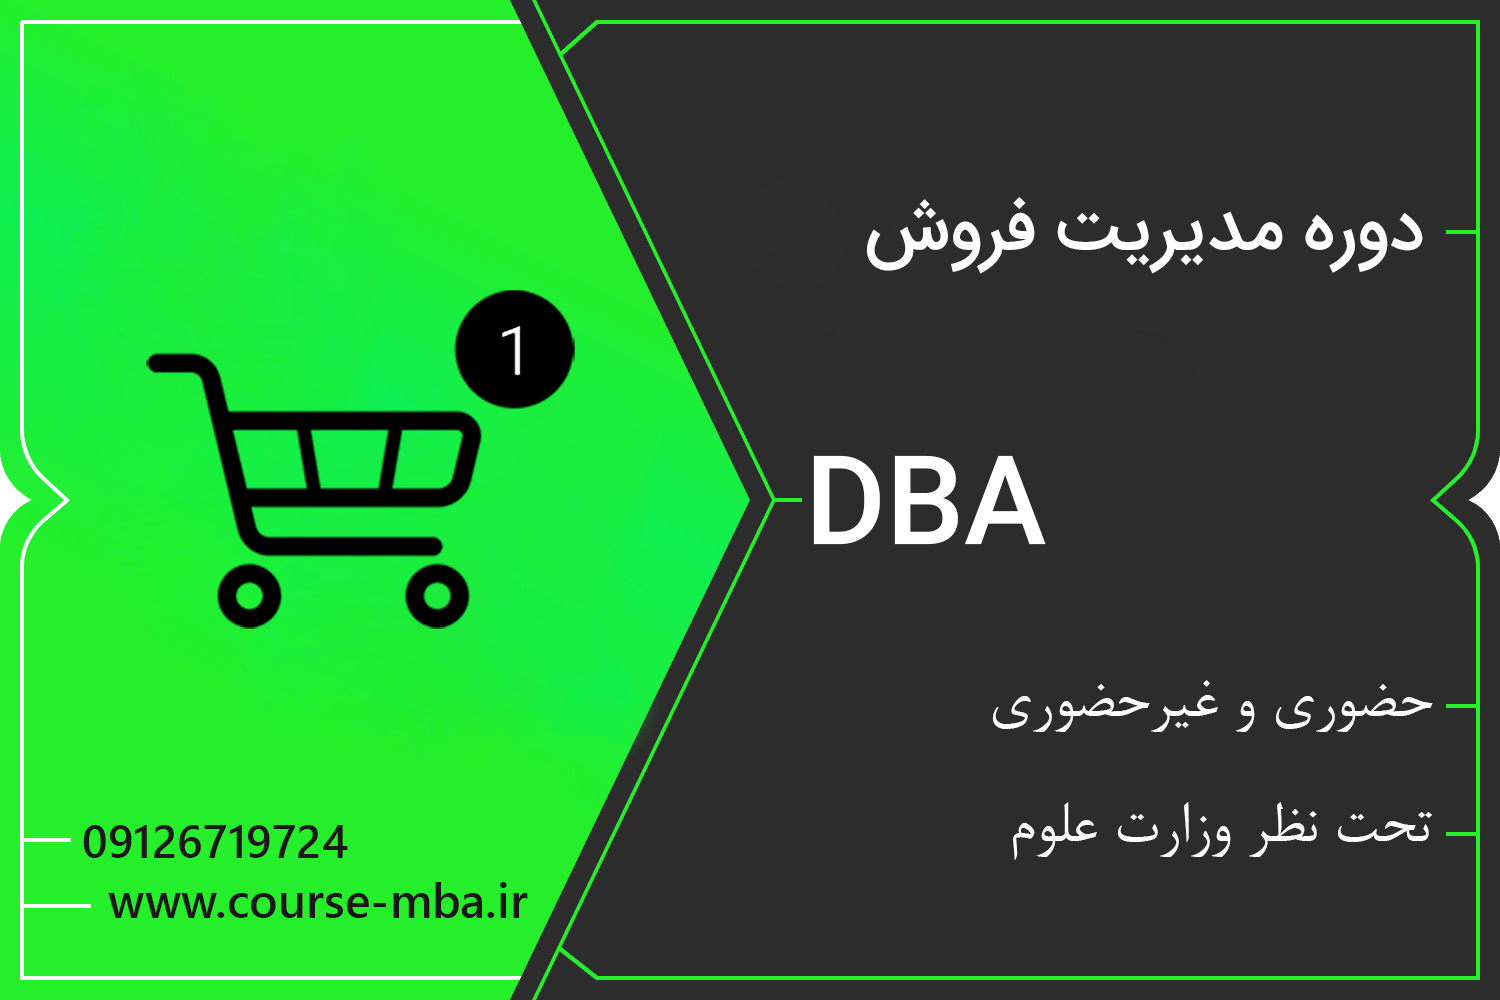 دوره DBA مدیریت فروش | مدرک DBA مدیریت فروش